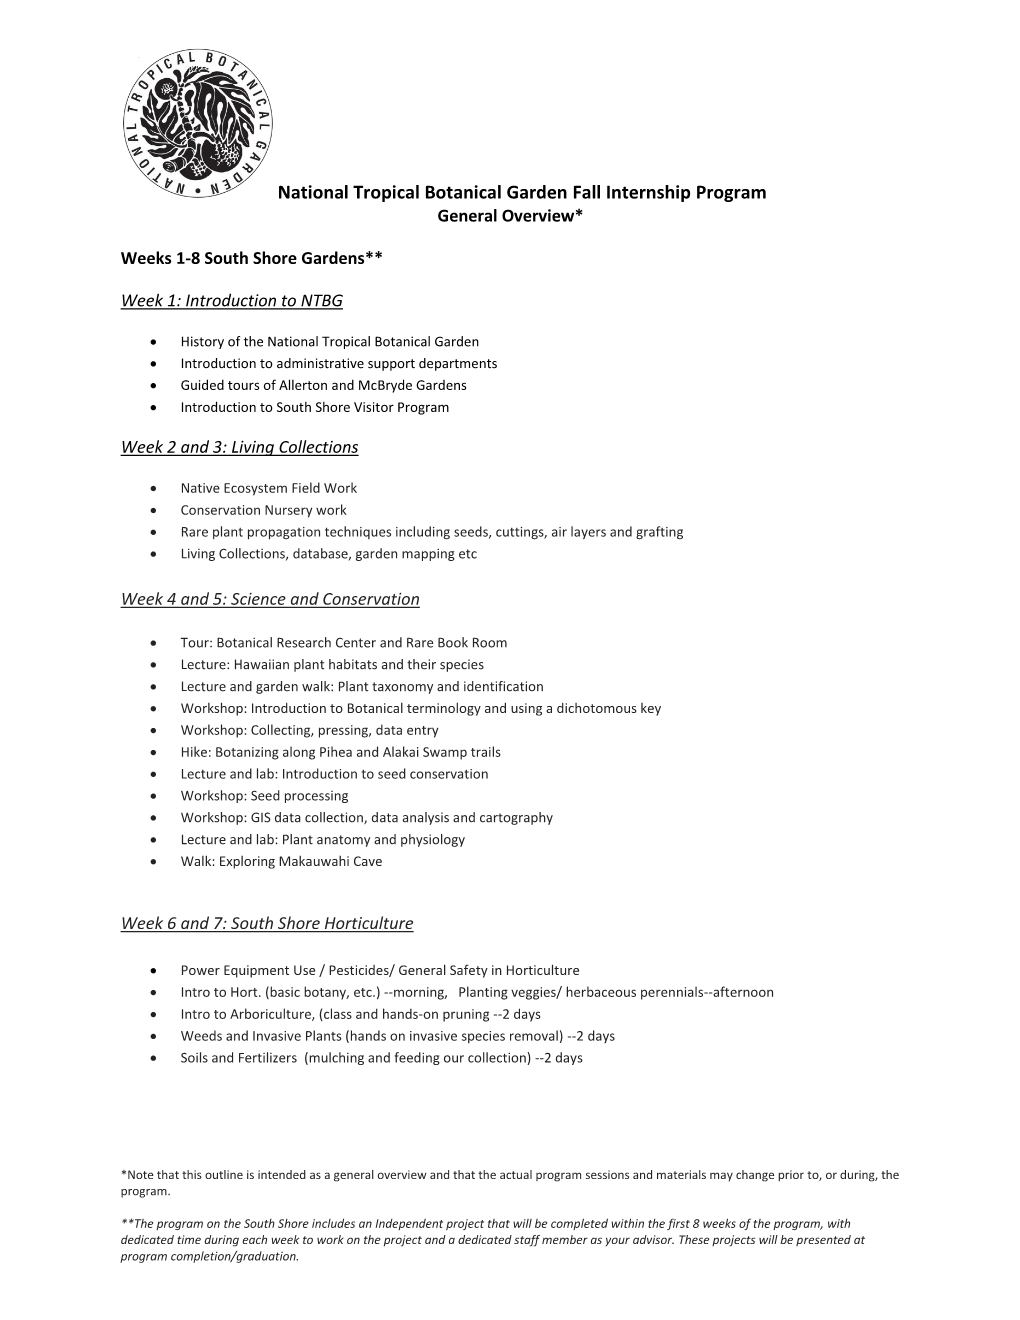 National Tropical Botanical Garden Fall Internship Program General Overview*